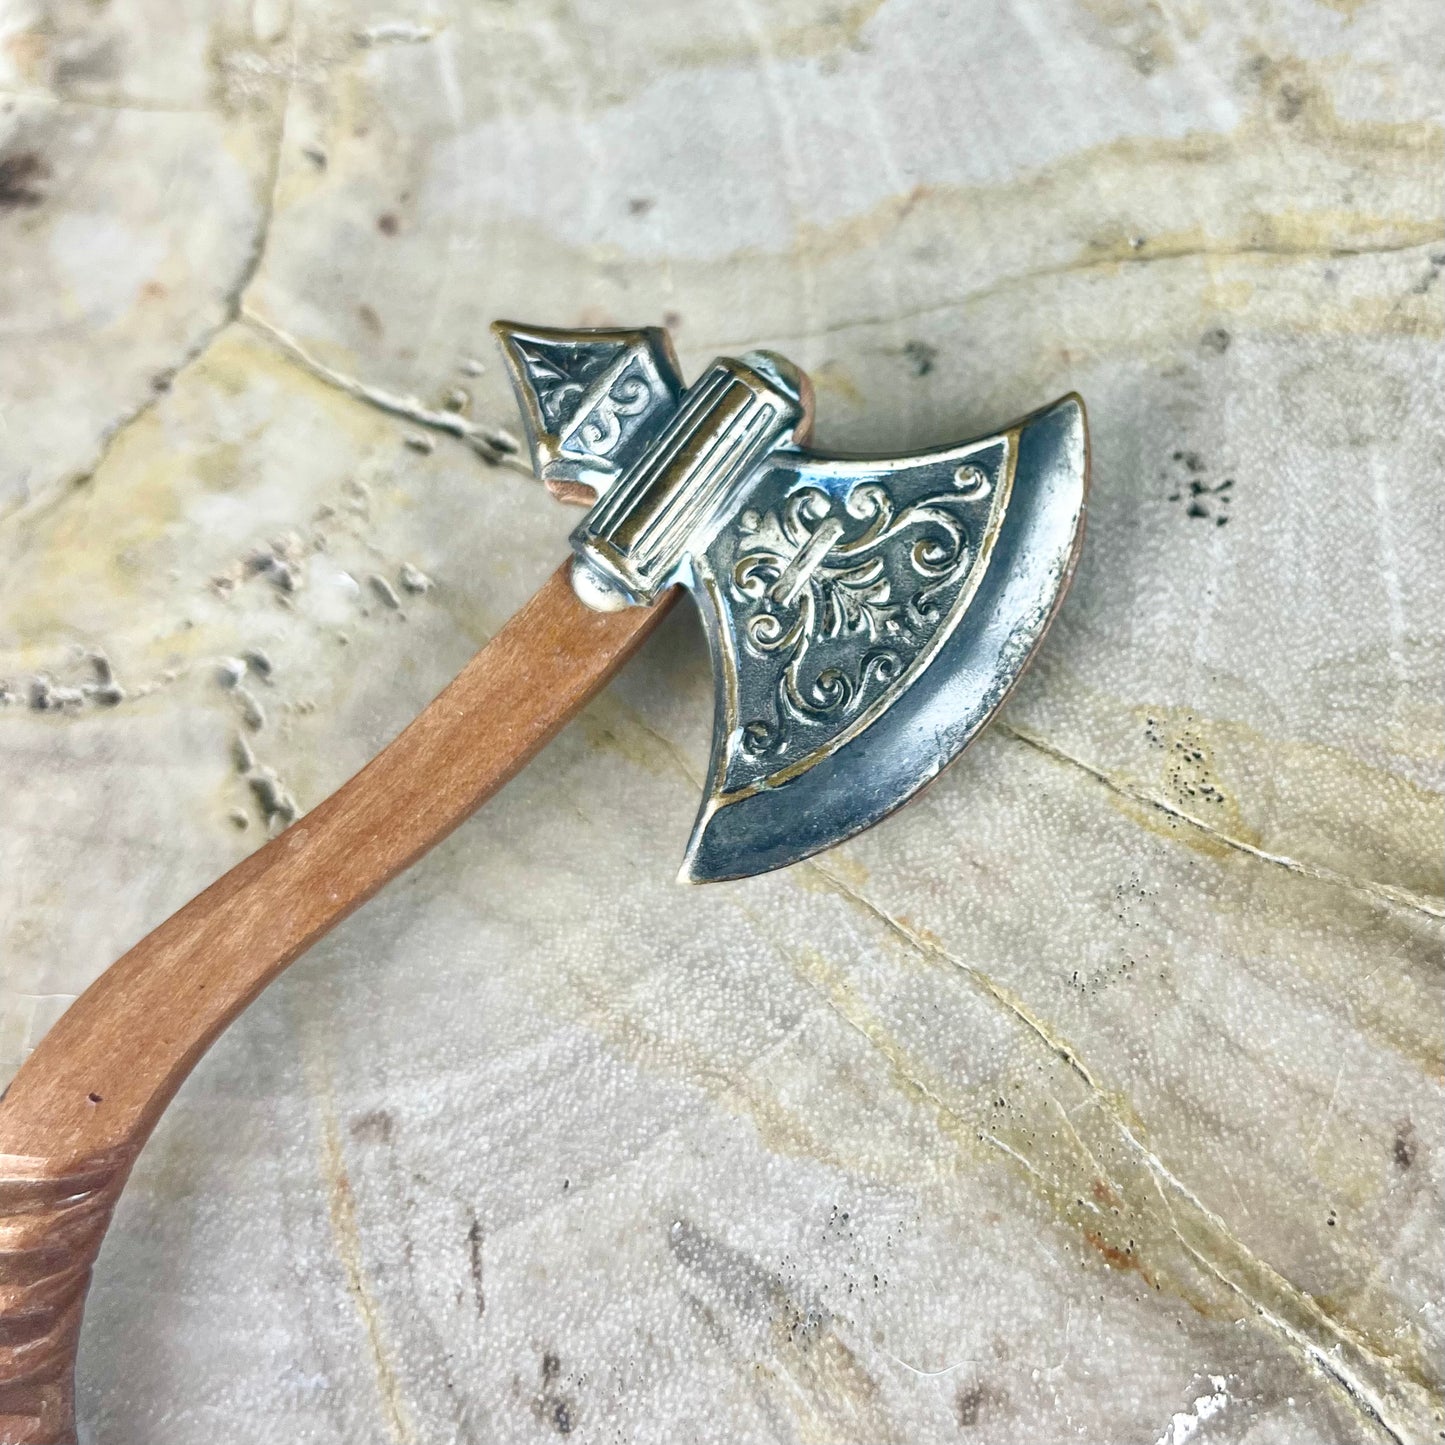 Vintage Wood Carved Axe with Elaborate Metal Blade 3”